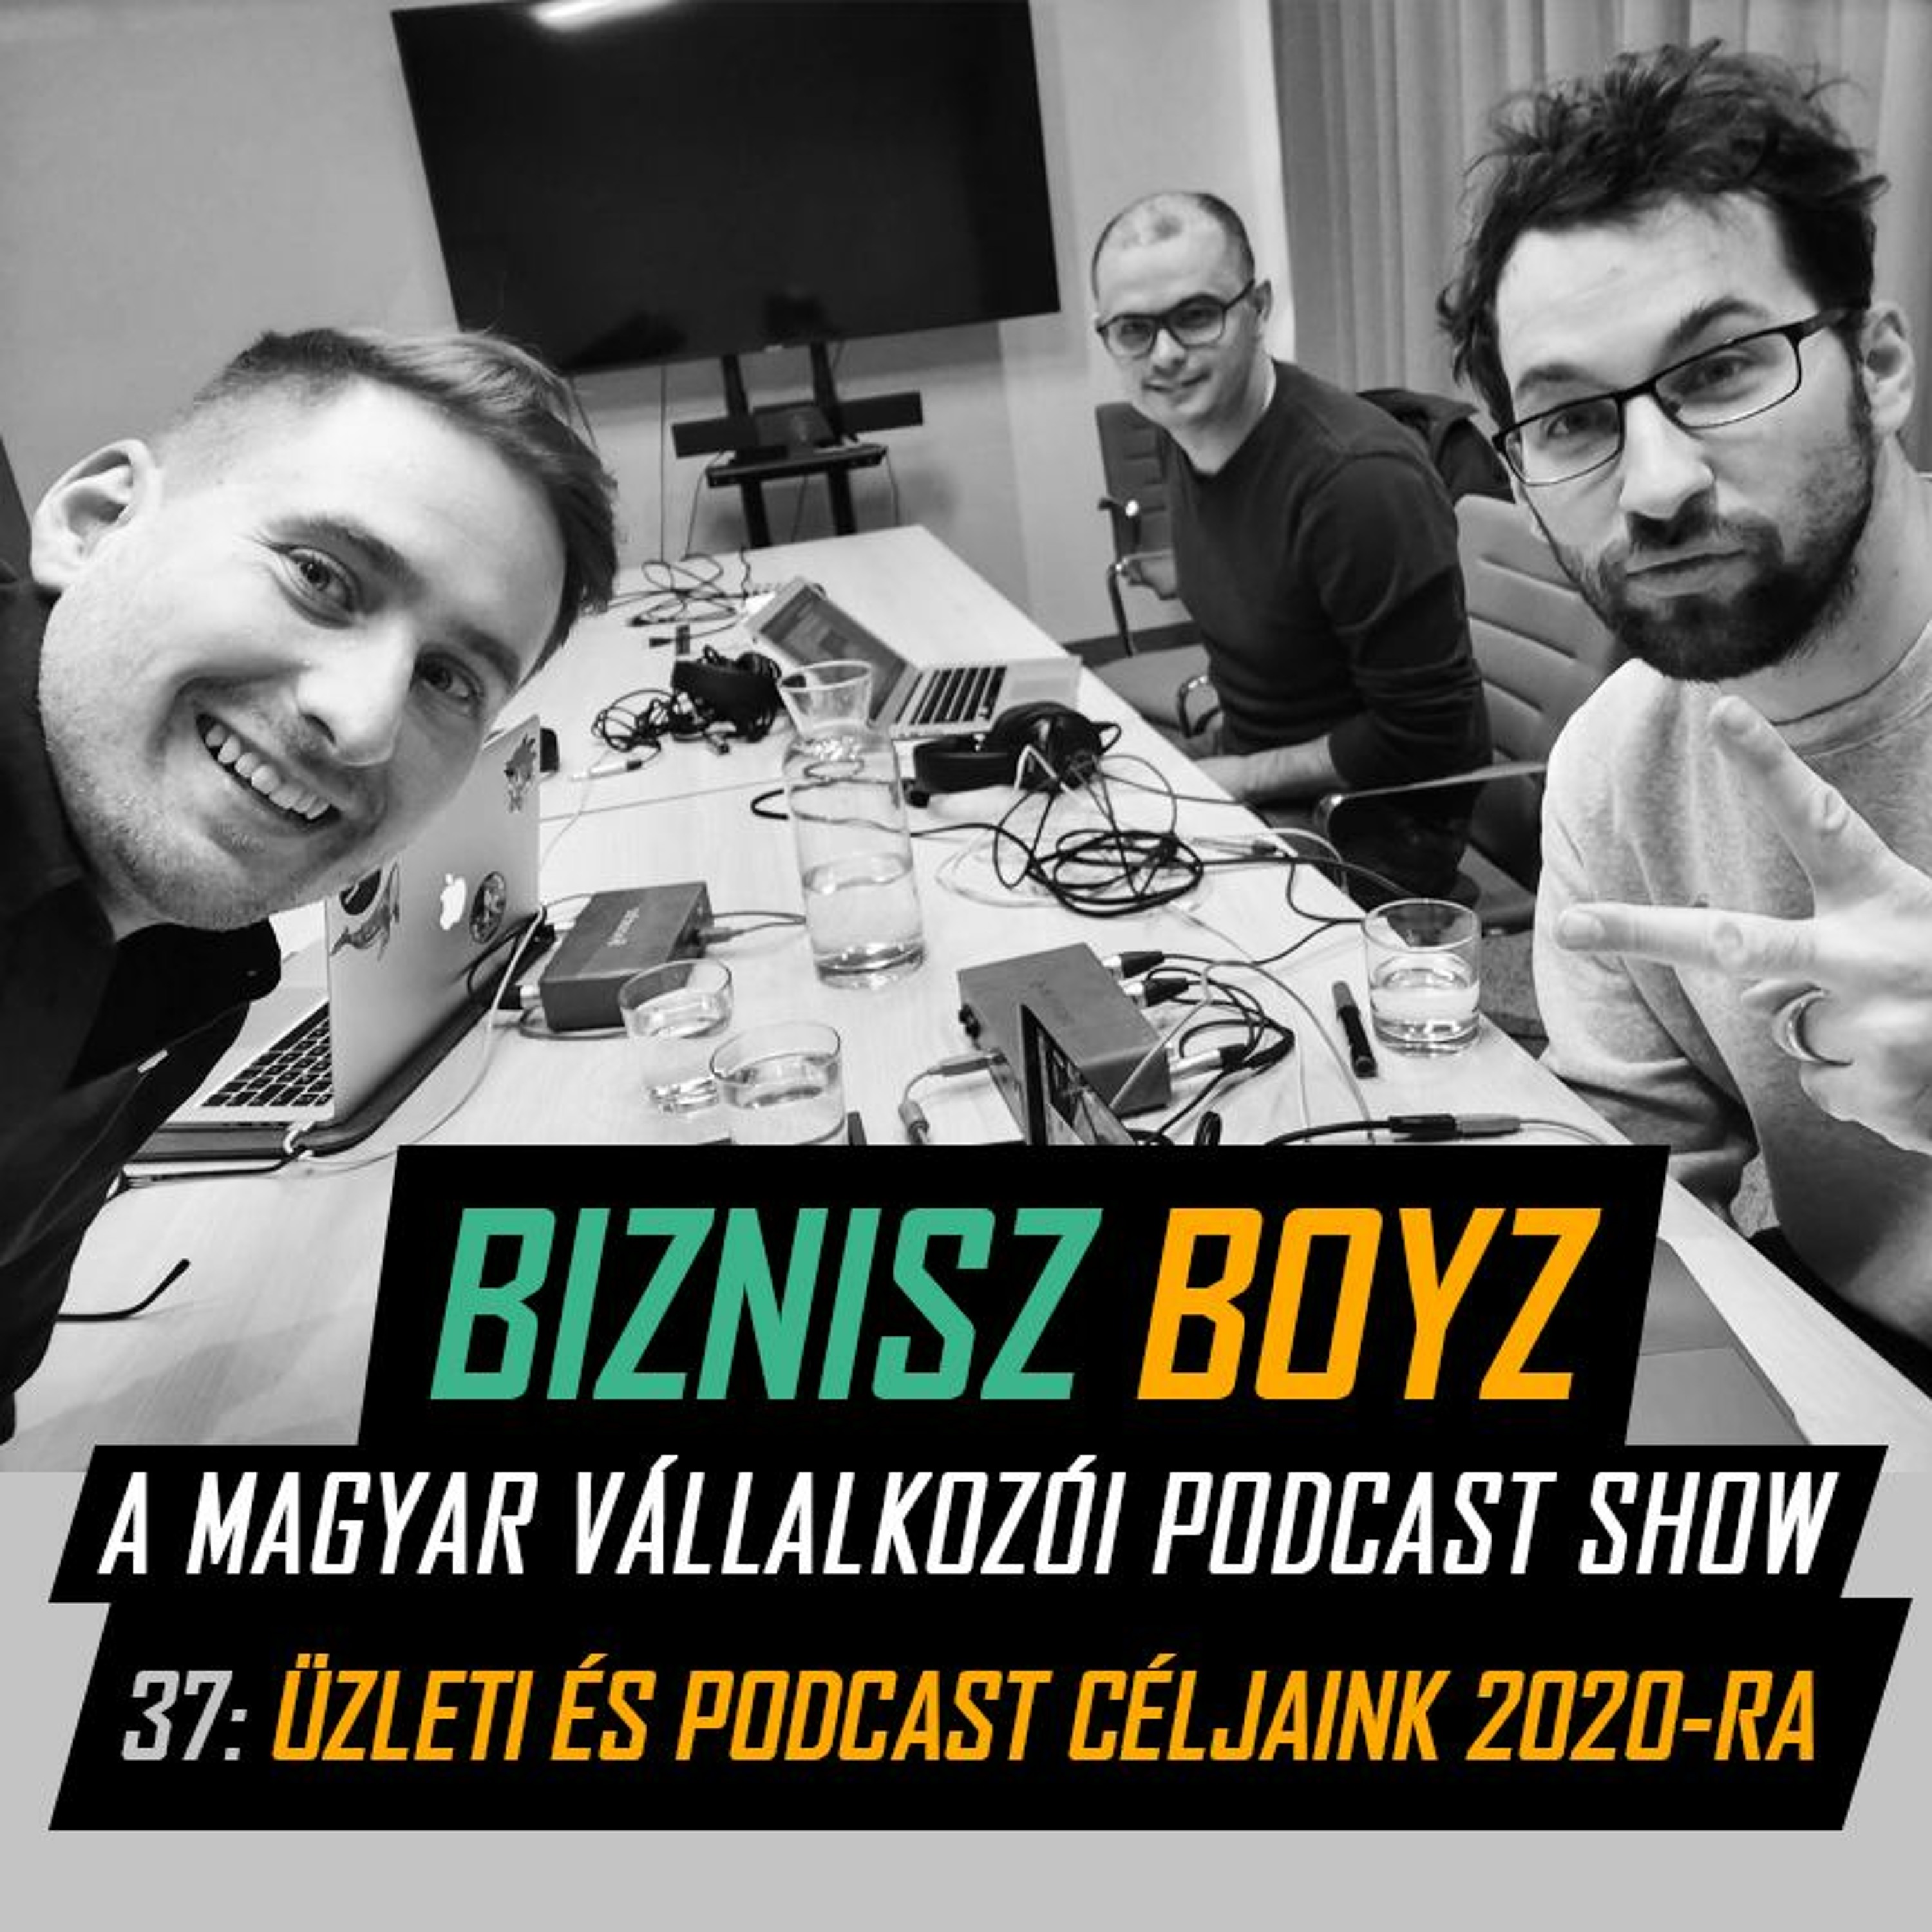 37. Üzleti és podcast céljaink 2020-ra | Évzáró | Biznisz Boyz Podcast